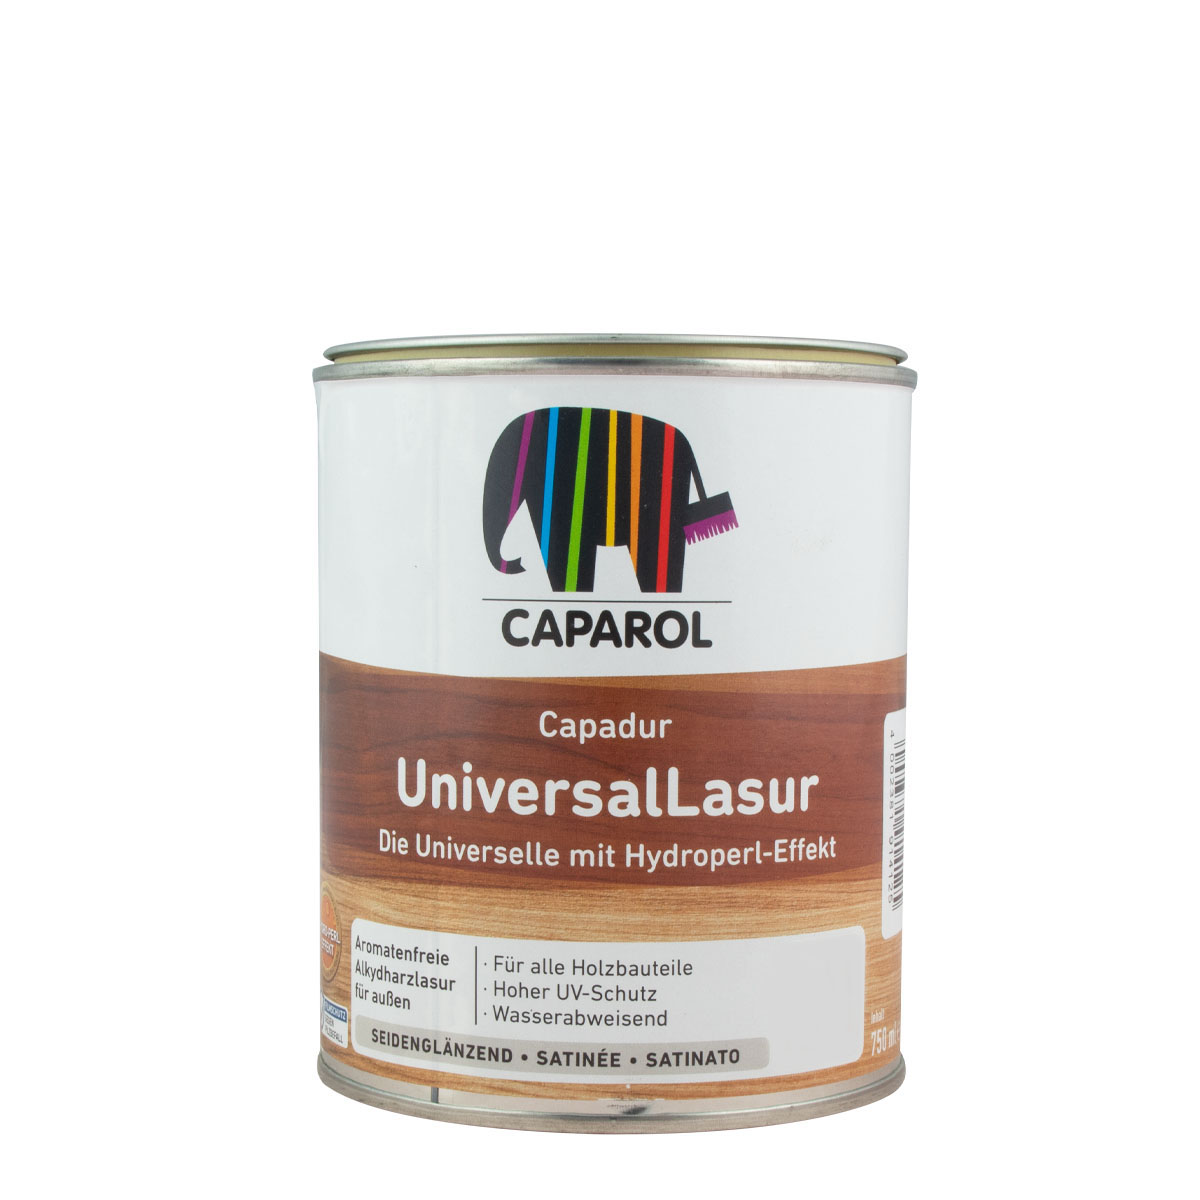 Caparol Capadur Universal Lasur 750ml, Nussbaum